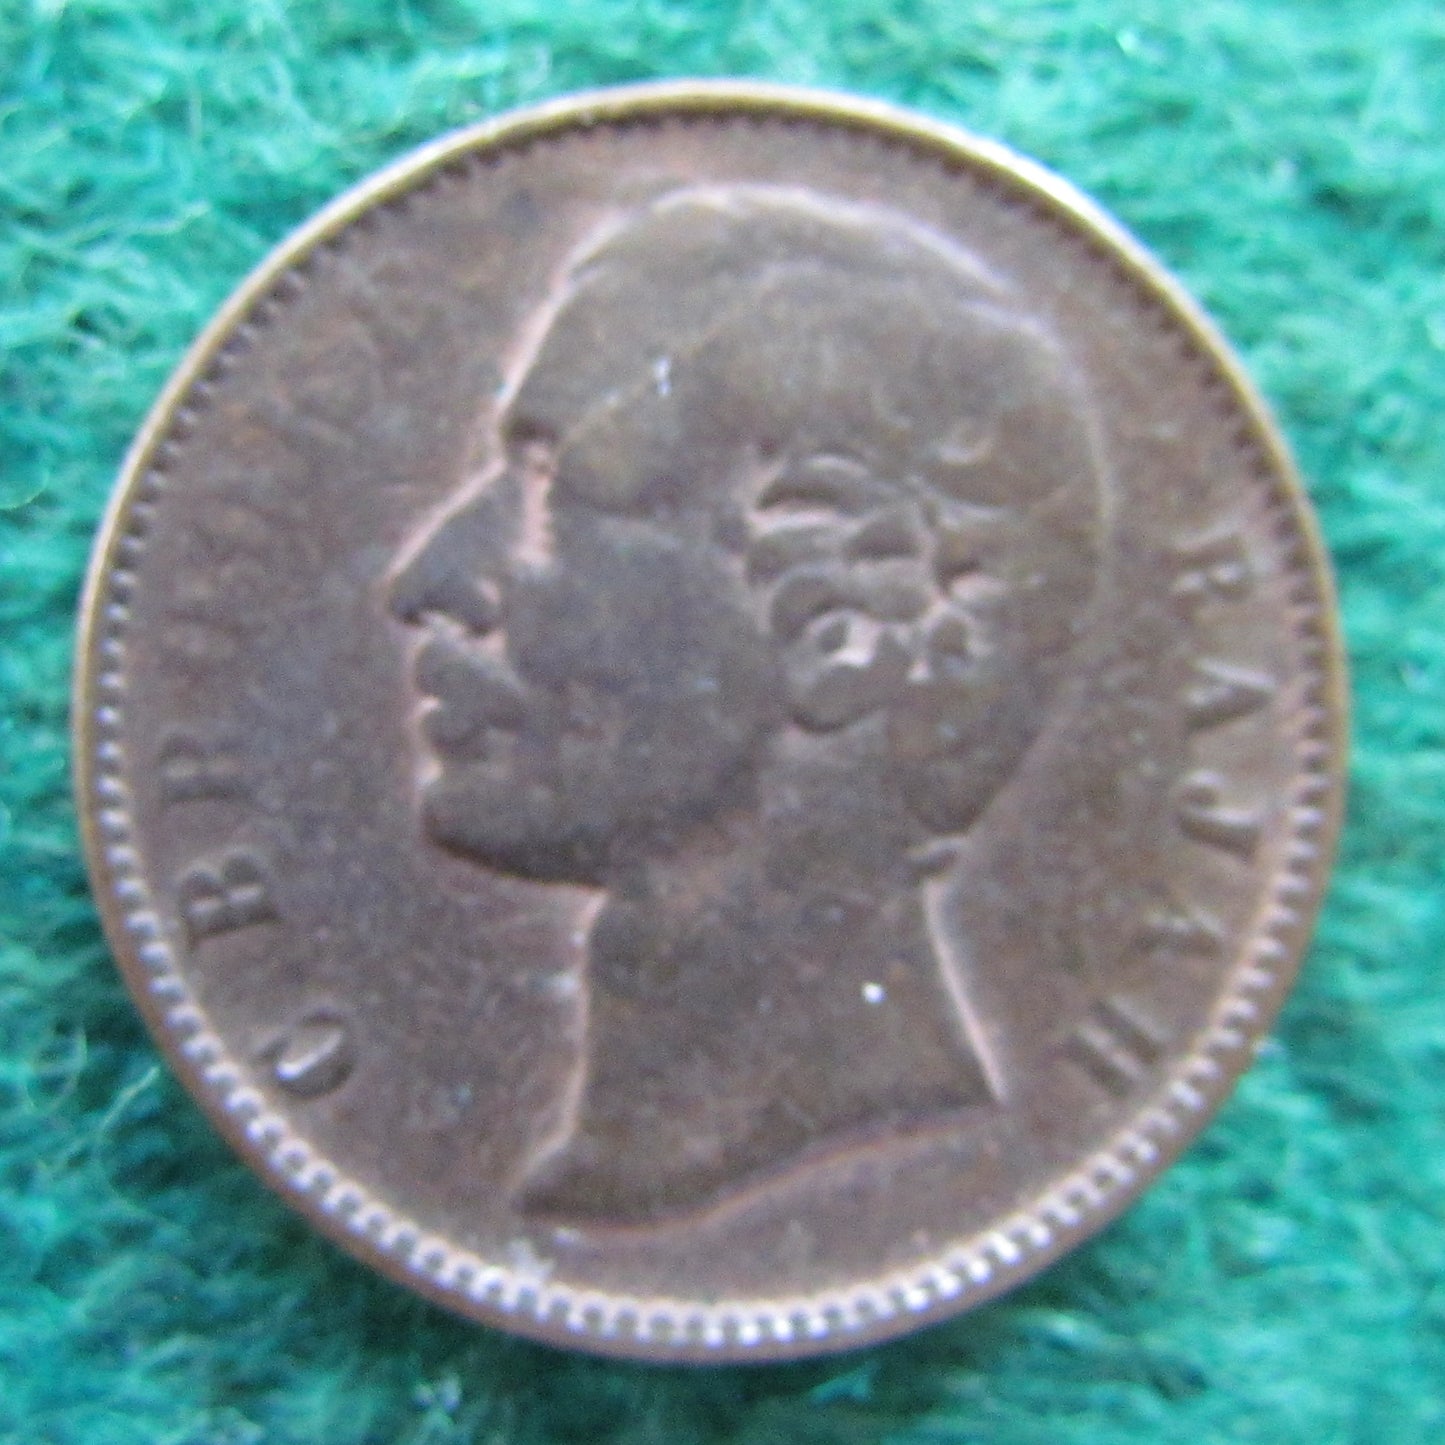 Sarawak 1896 Half Cent Coin C B Brooke Rajah